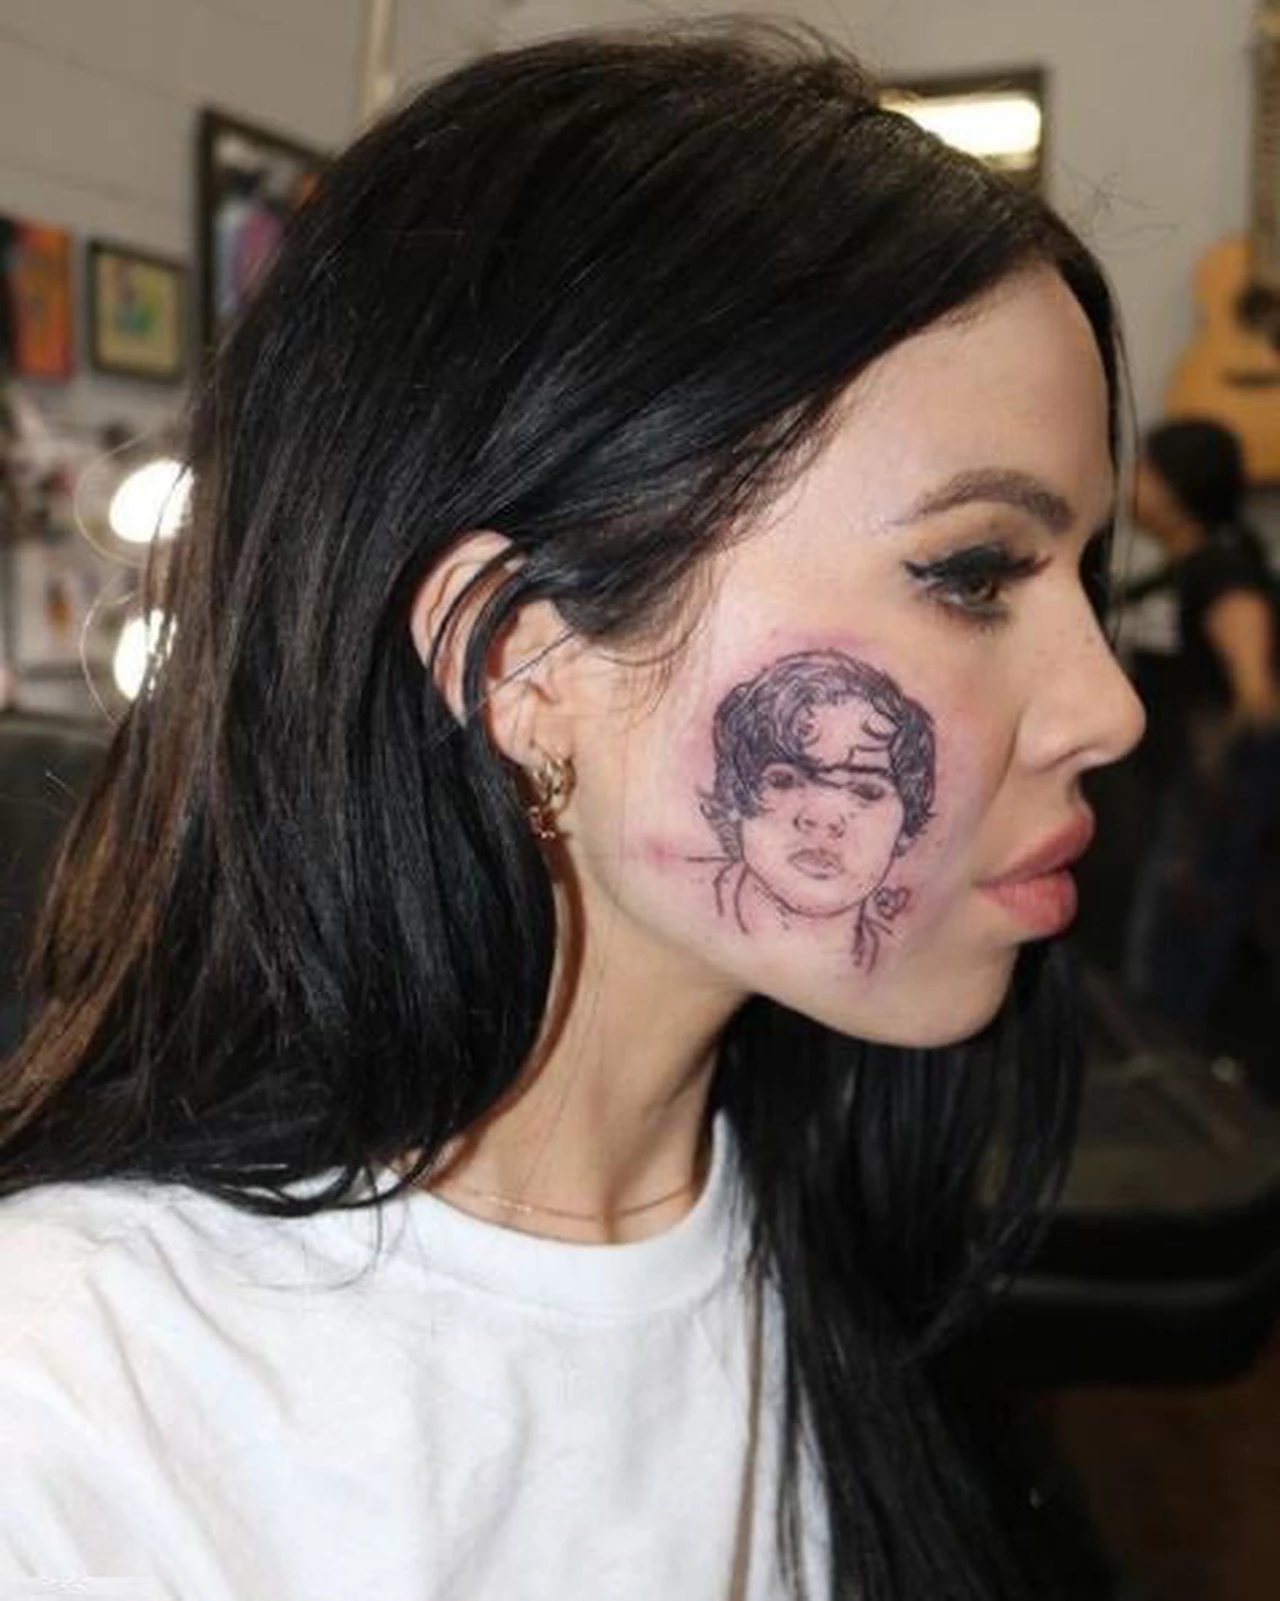 Insólito: esta chica se tatuó en la cara al cantante Harry Styles por amor, pero no se le parece en nada